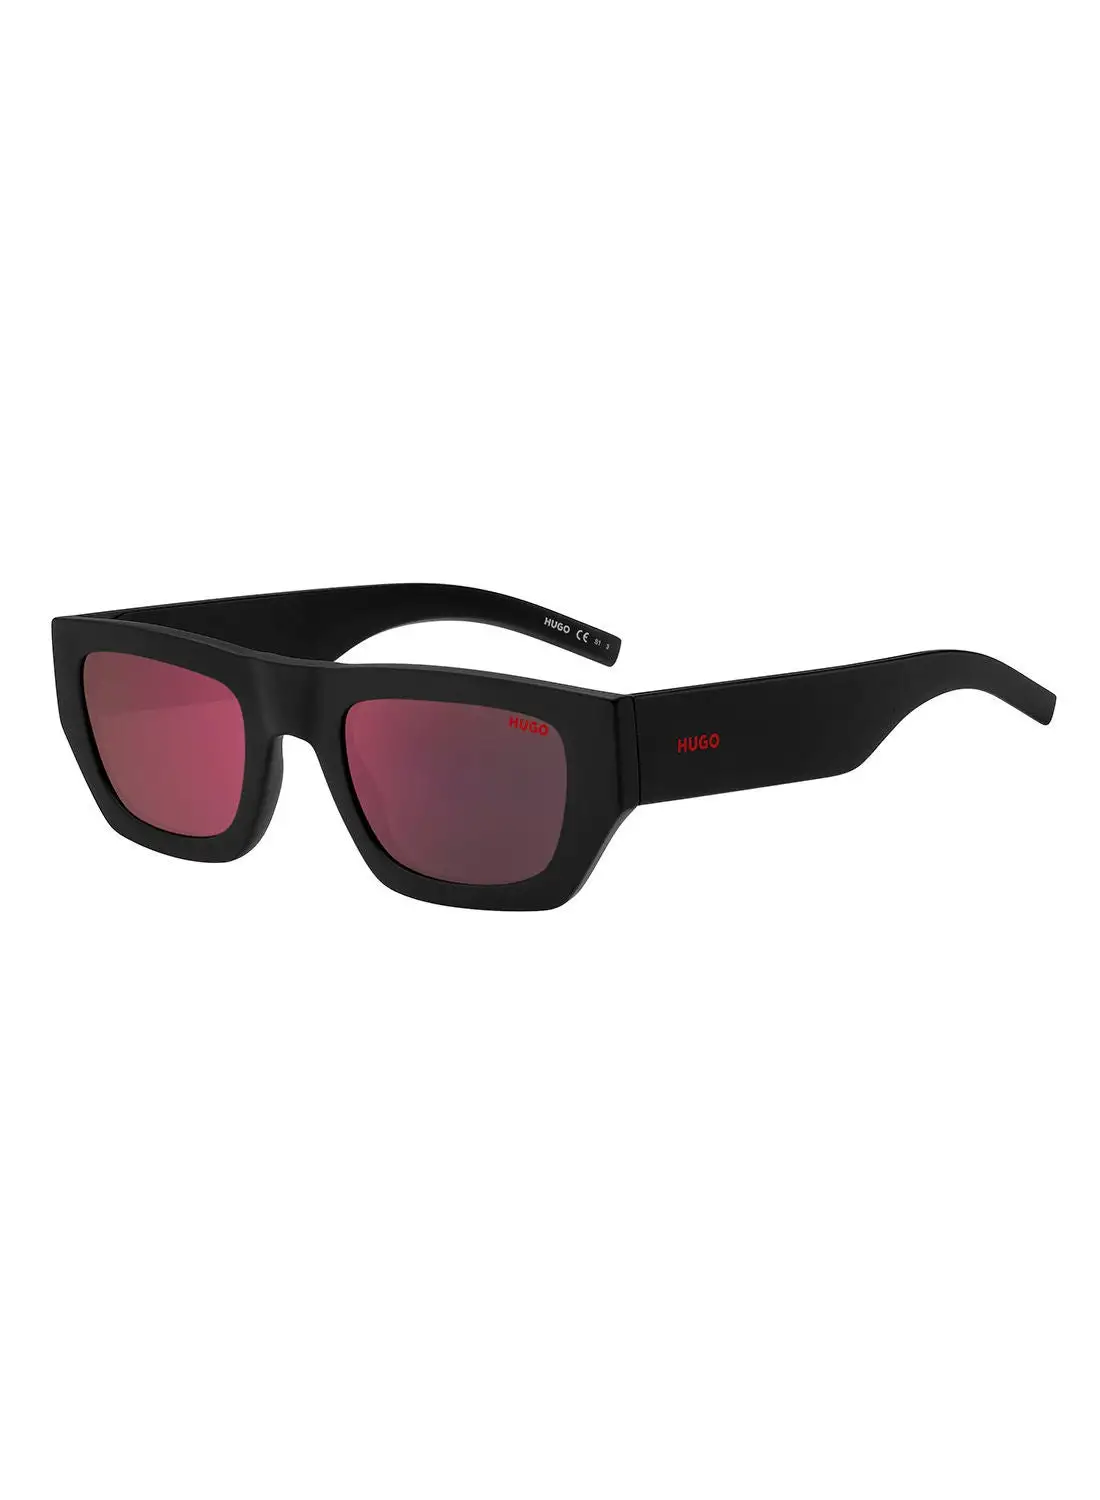 هوغو نظارة شمسية للرجال للحماية من الأشعة فوق البنفسجية - Hg 1252/S Black 51 - مقاس العدسة: 51 ملم